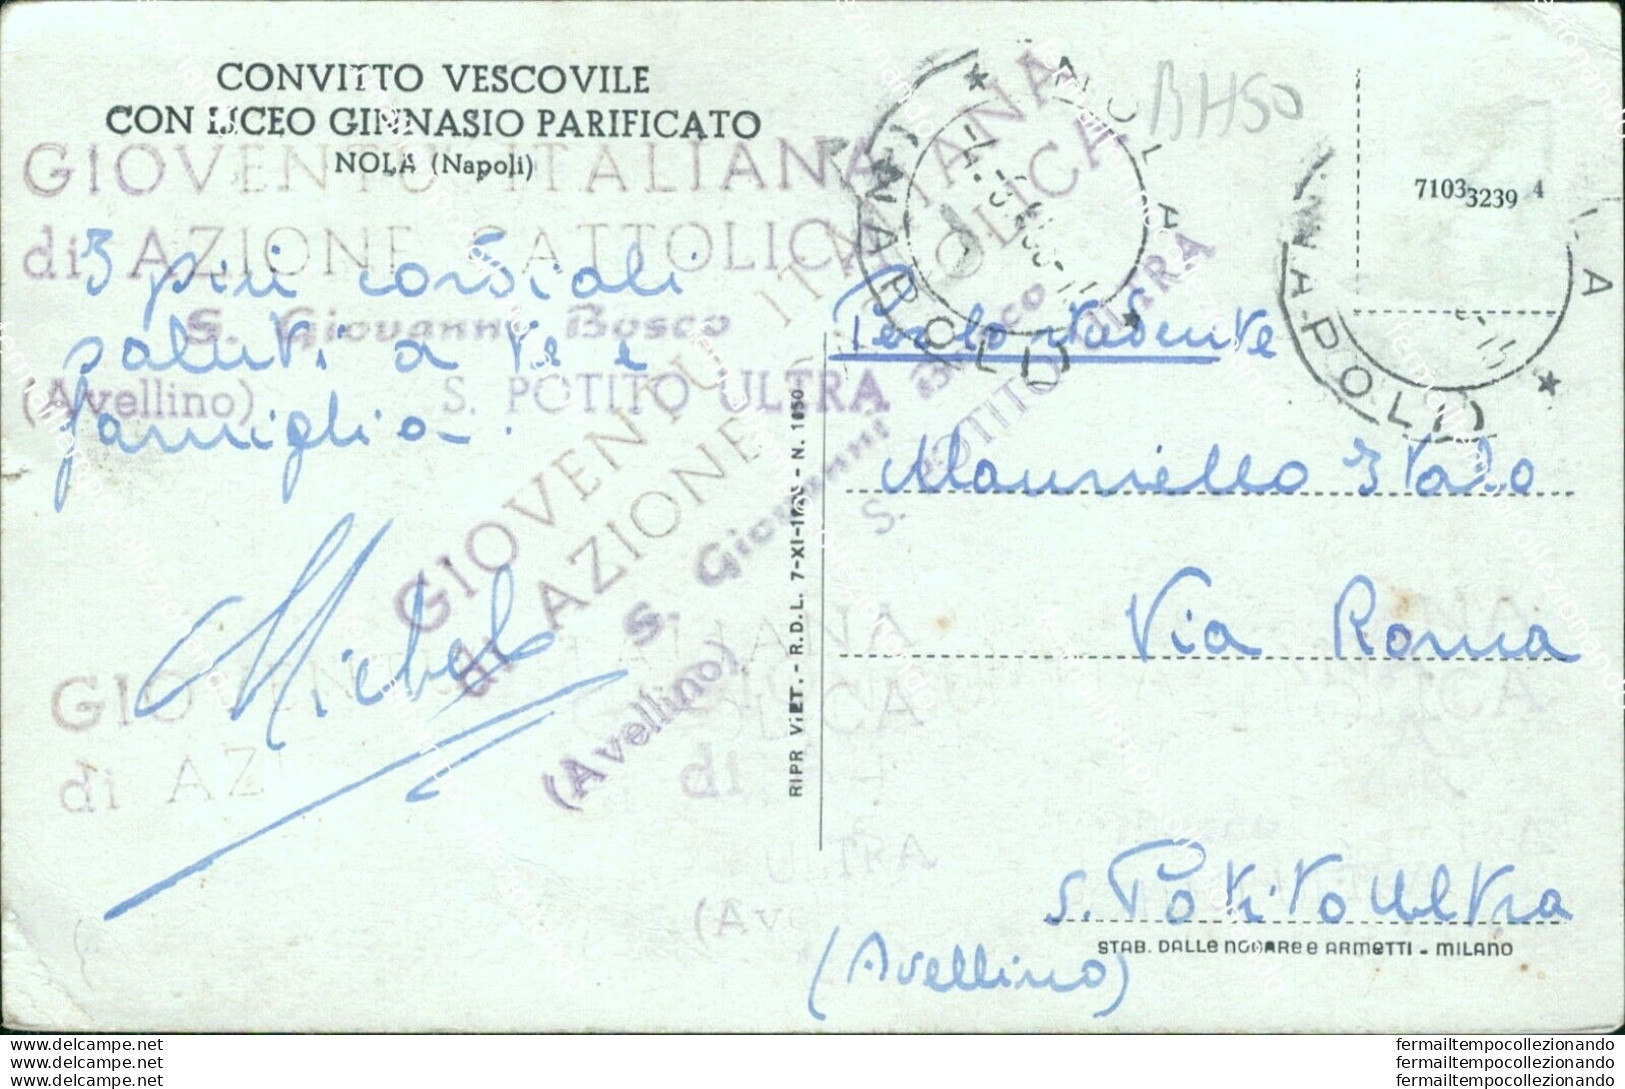 Bh50 Cartolina Nola Convitto Vescovile Con Liceo Ginnasio Provincia Di Napoli - Napoli (Neapel)